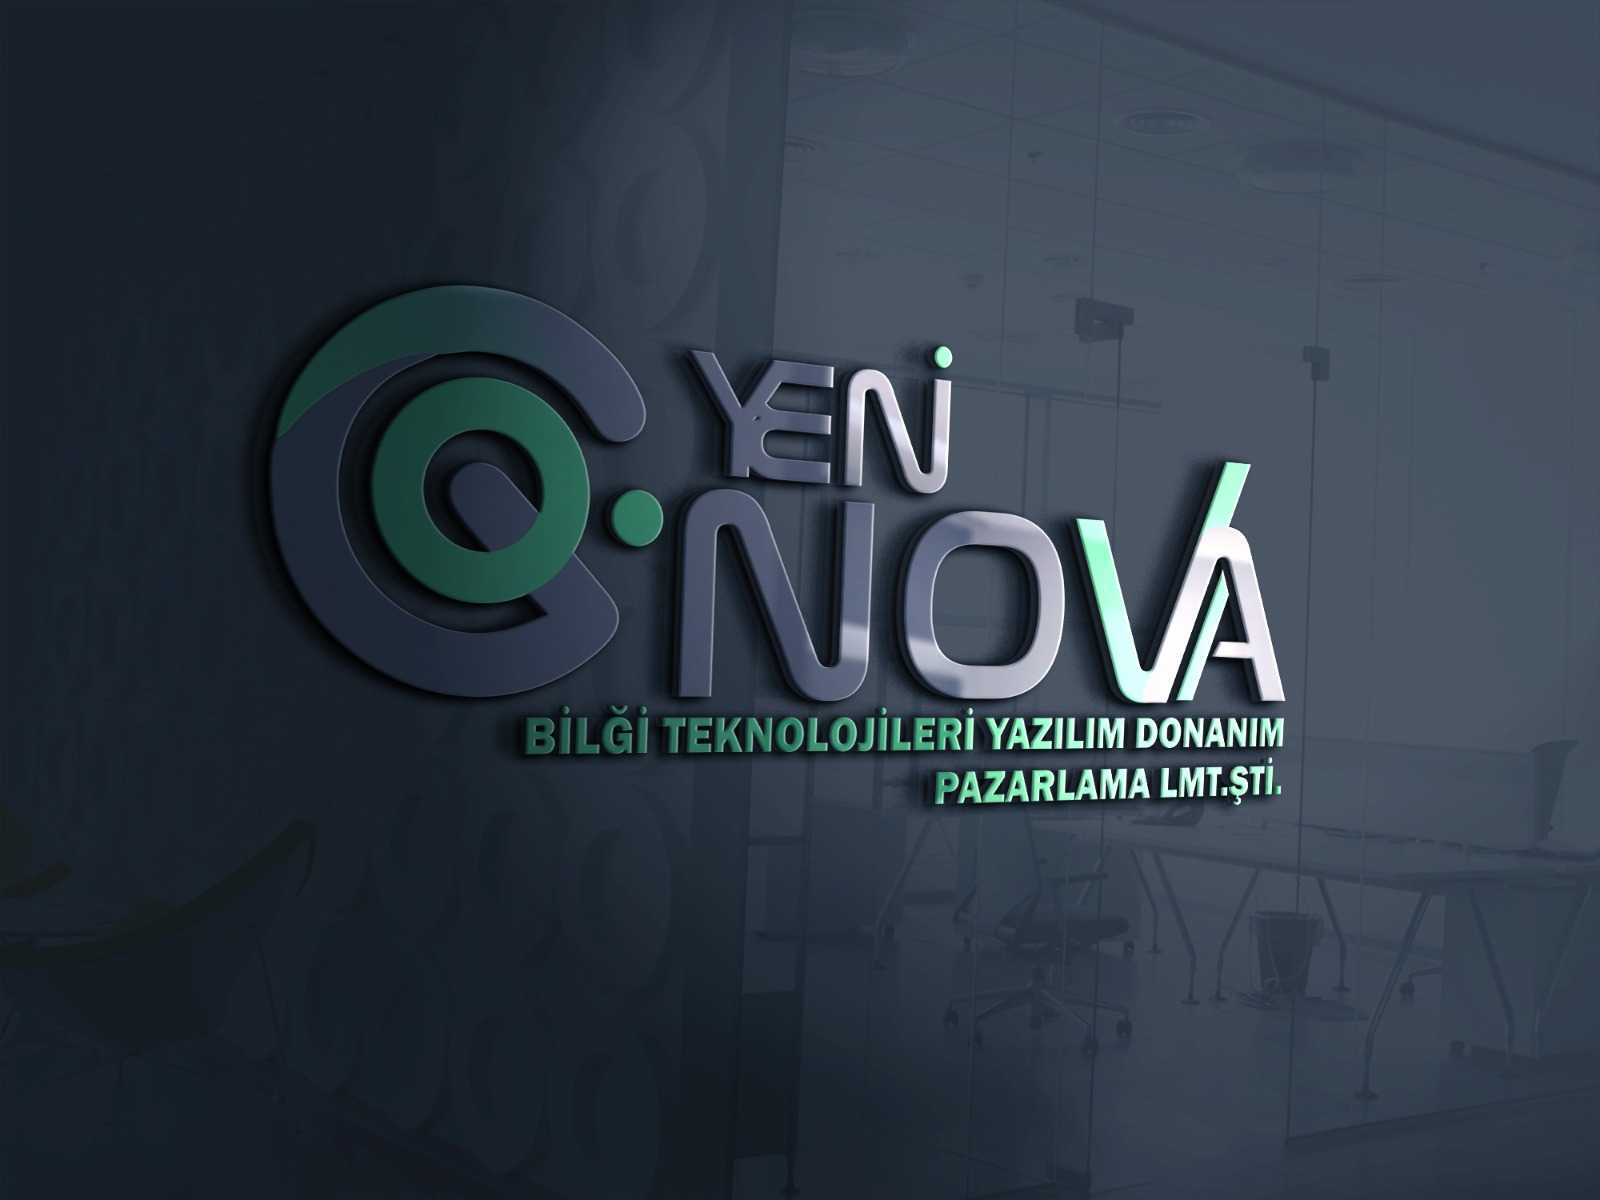 Yeni Nova Bilgi Teknolojileri Yazılım Şirketi Logo